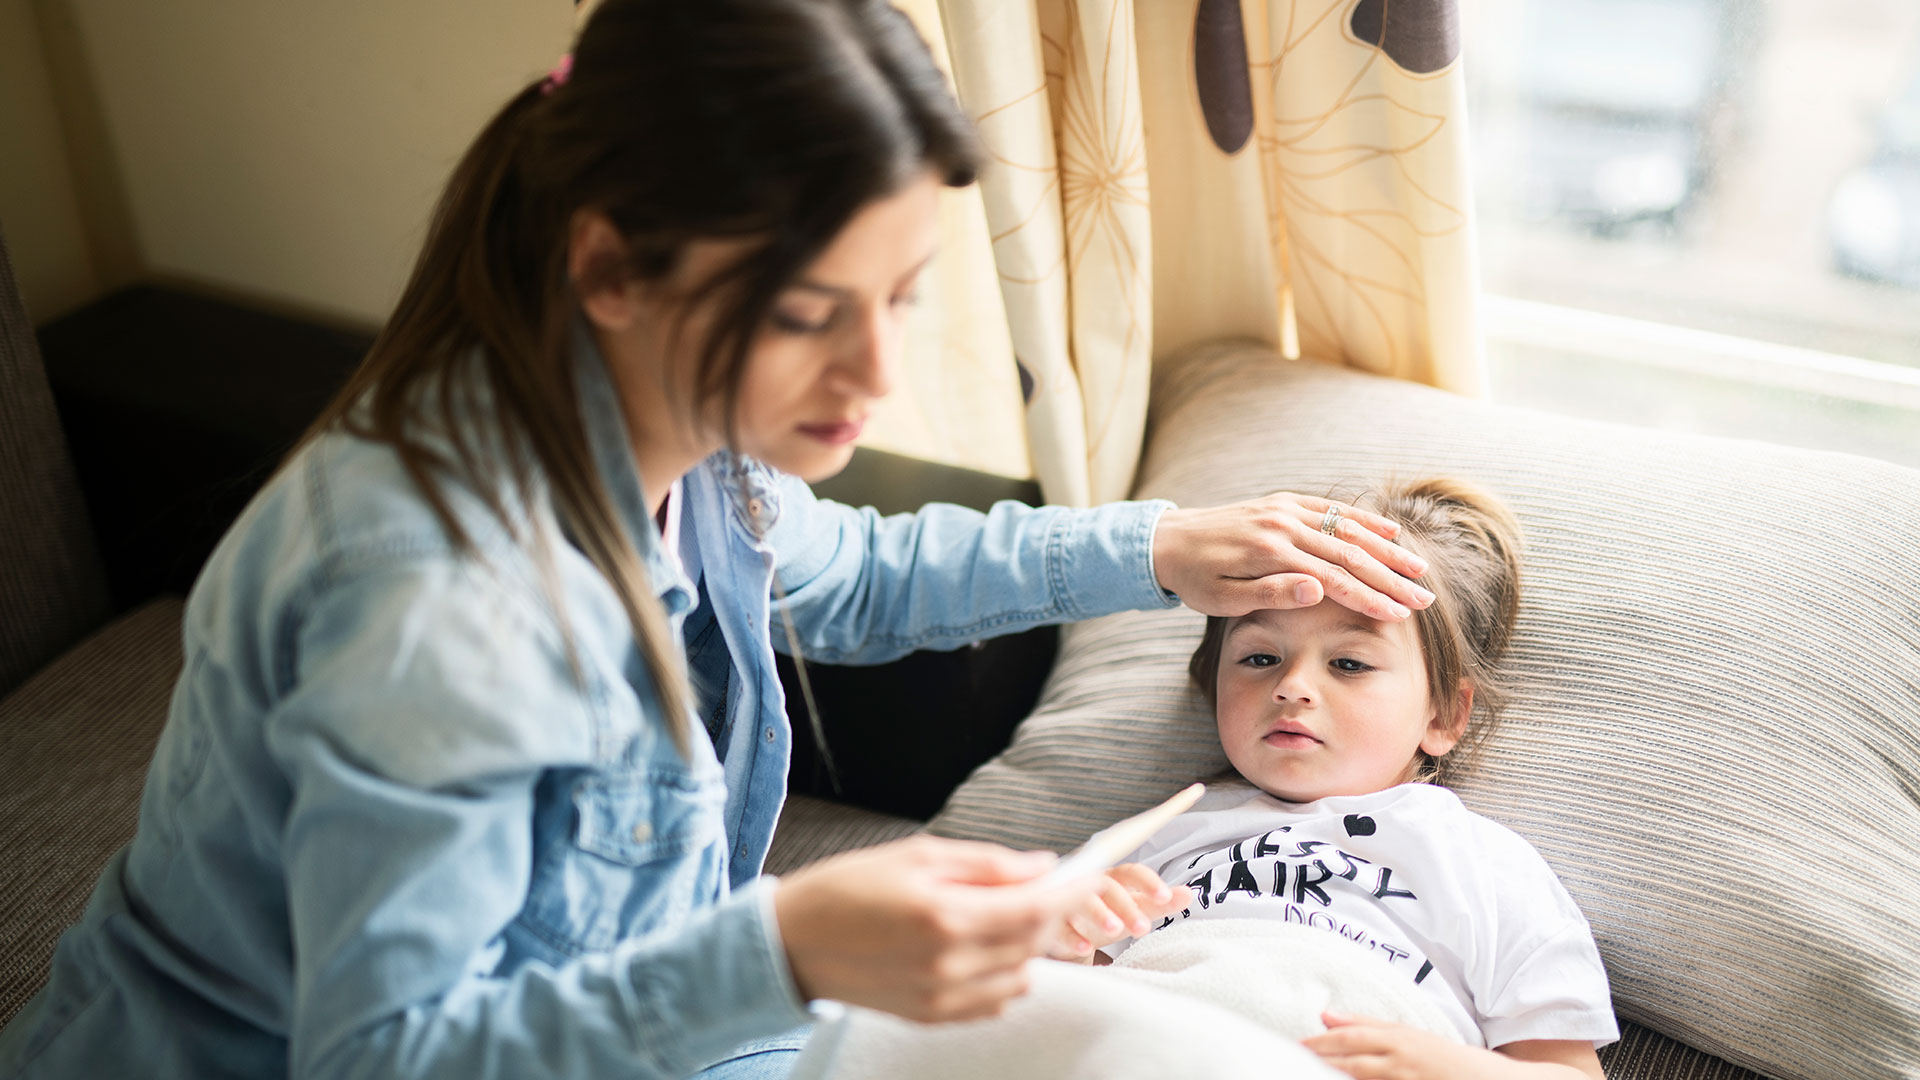 L'étude montre la réticence d'1 parent sur 4 à révéler que leurs enfants avaient la maladie ou le non-respect des protocoles sanitaires de prévention du COVID-19 (Getty)